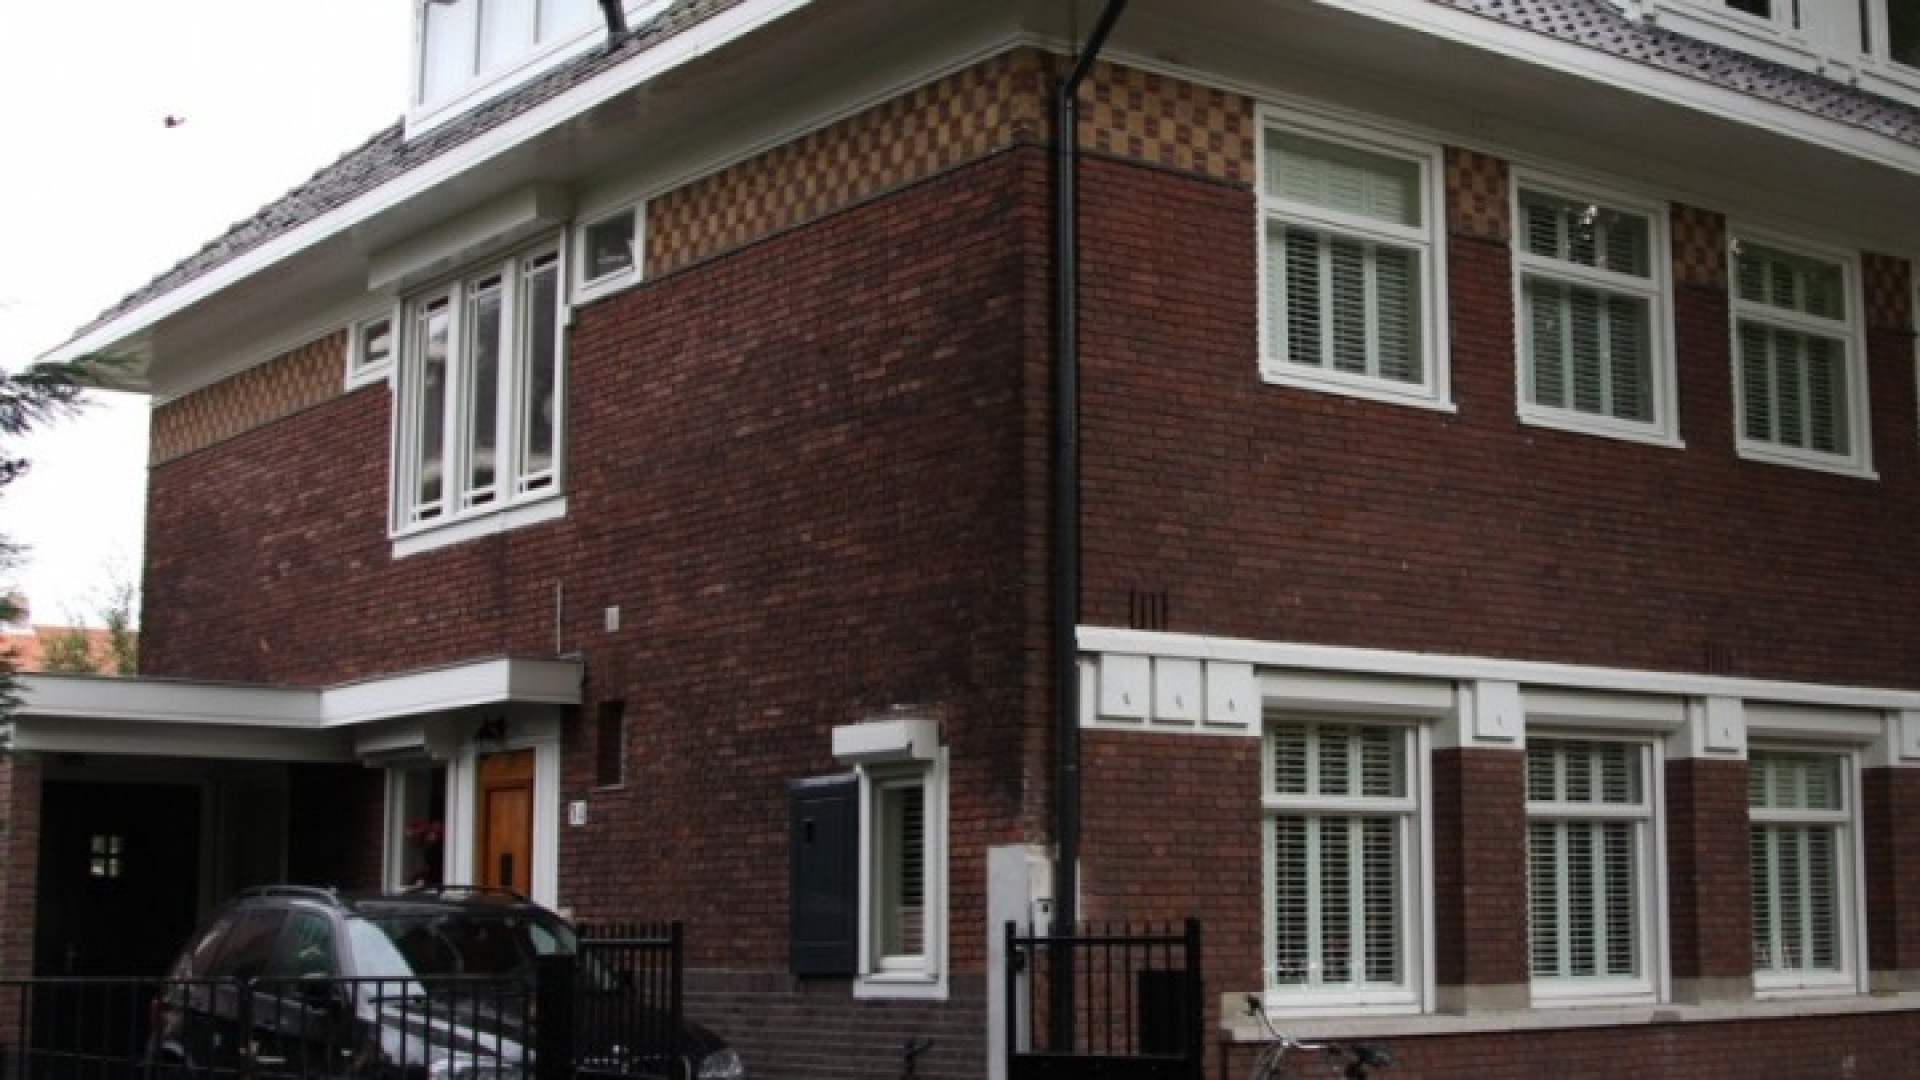 Huis Doutzen Kroes in Amsterdam Zuid te huur gezet. Zie foto's 1